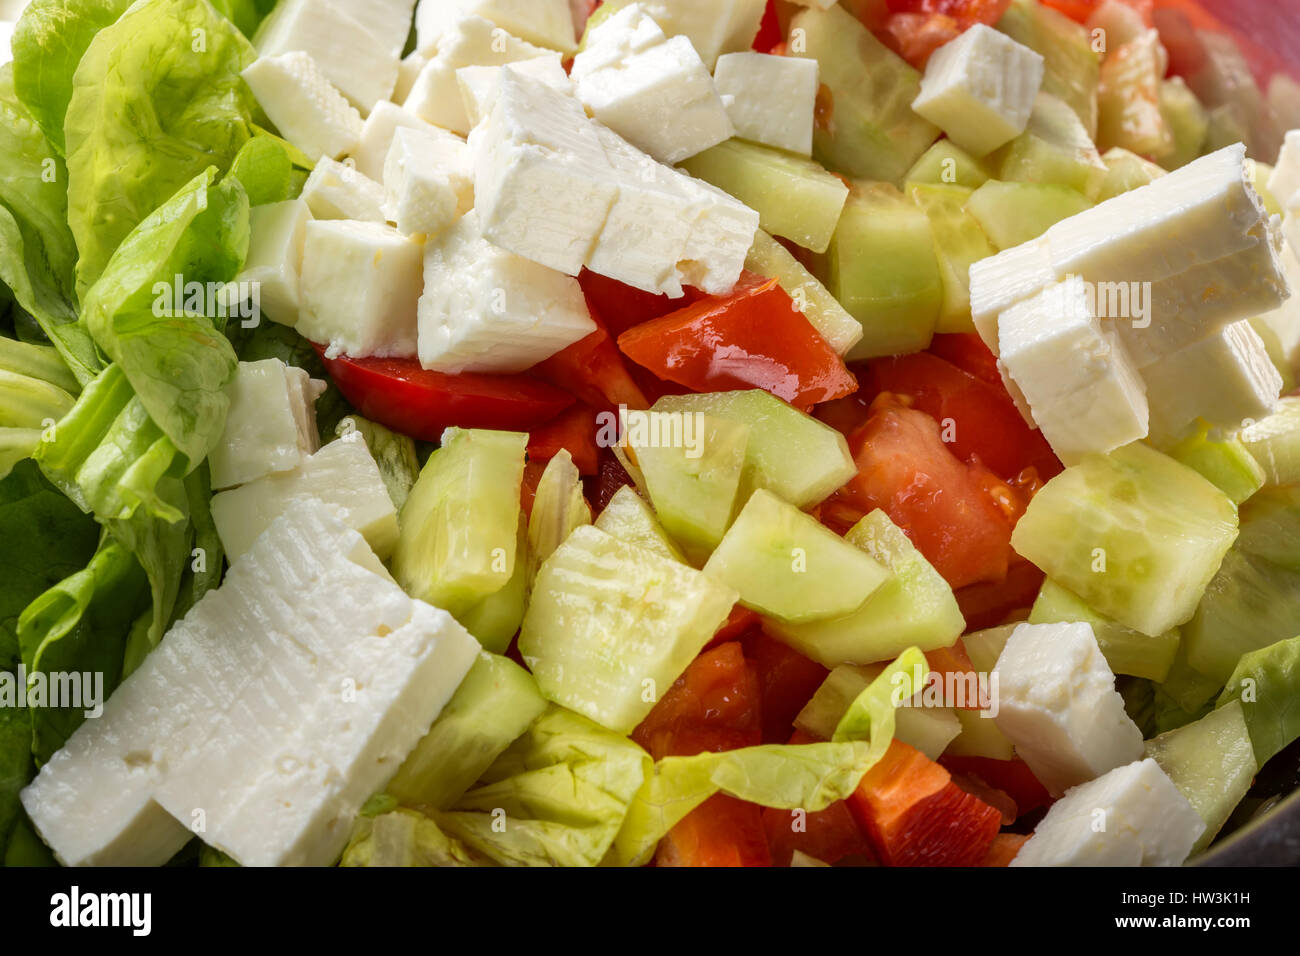 Les ingrédients frais et fromage blanc telemea roumain pour la salade dans un bol Banque D'Images